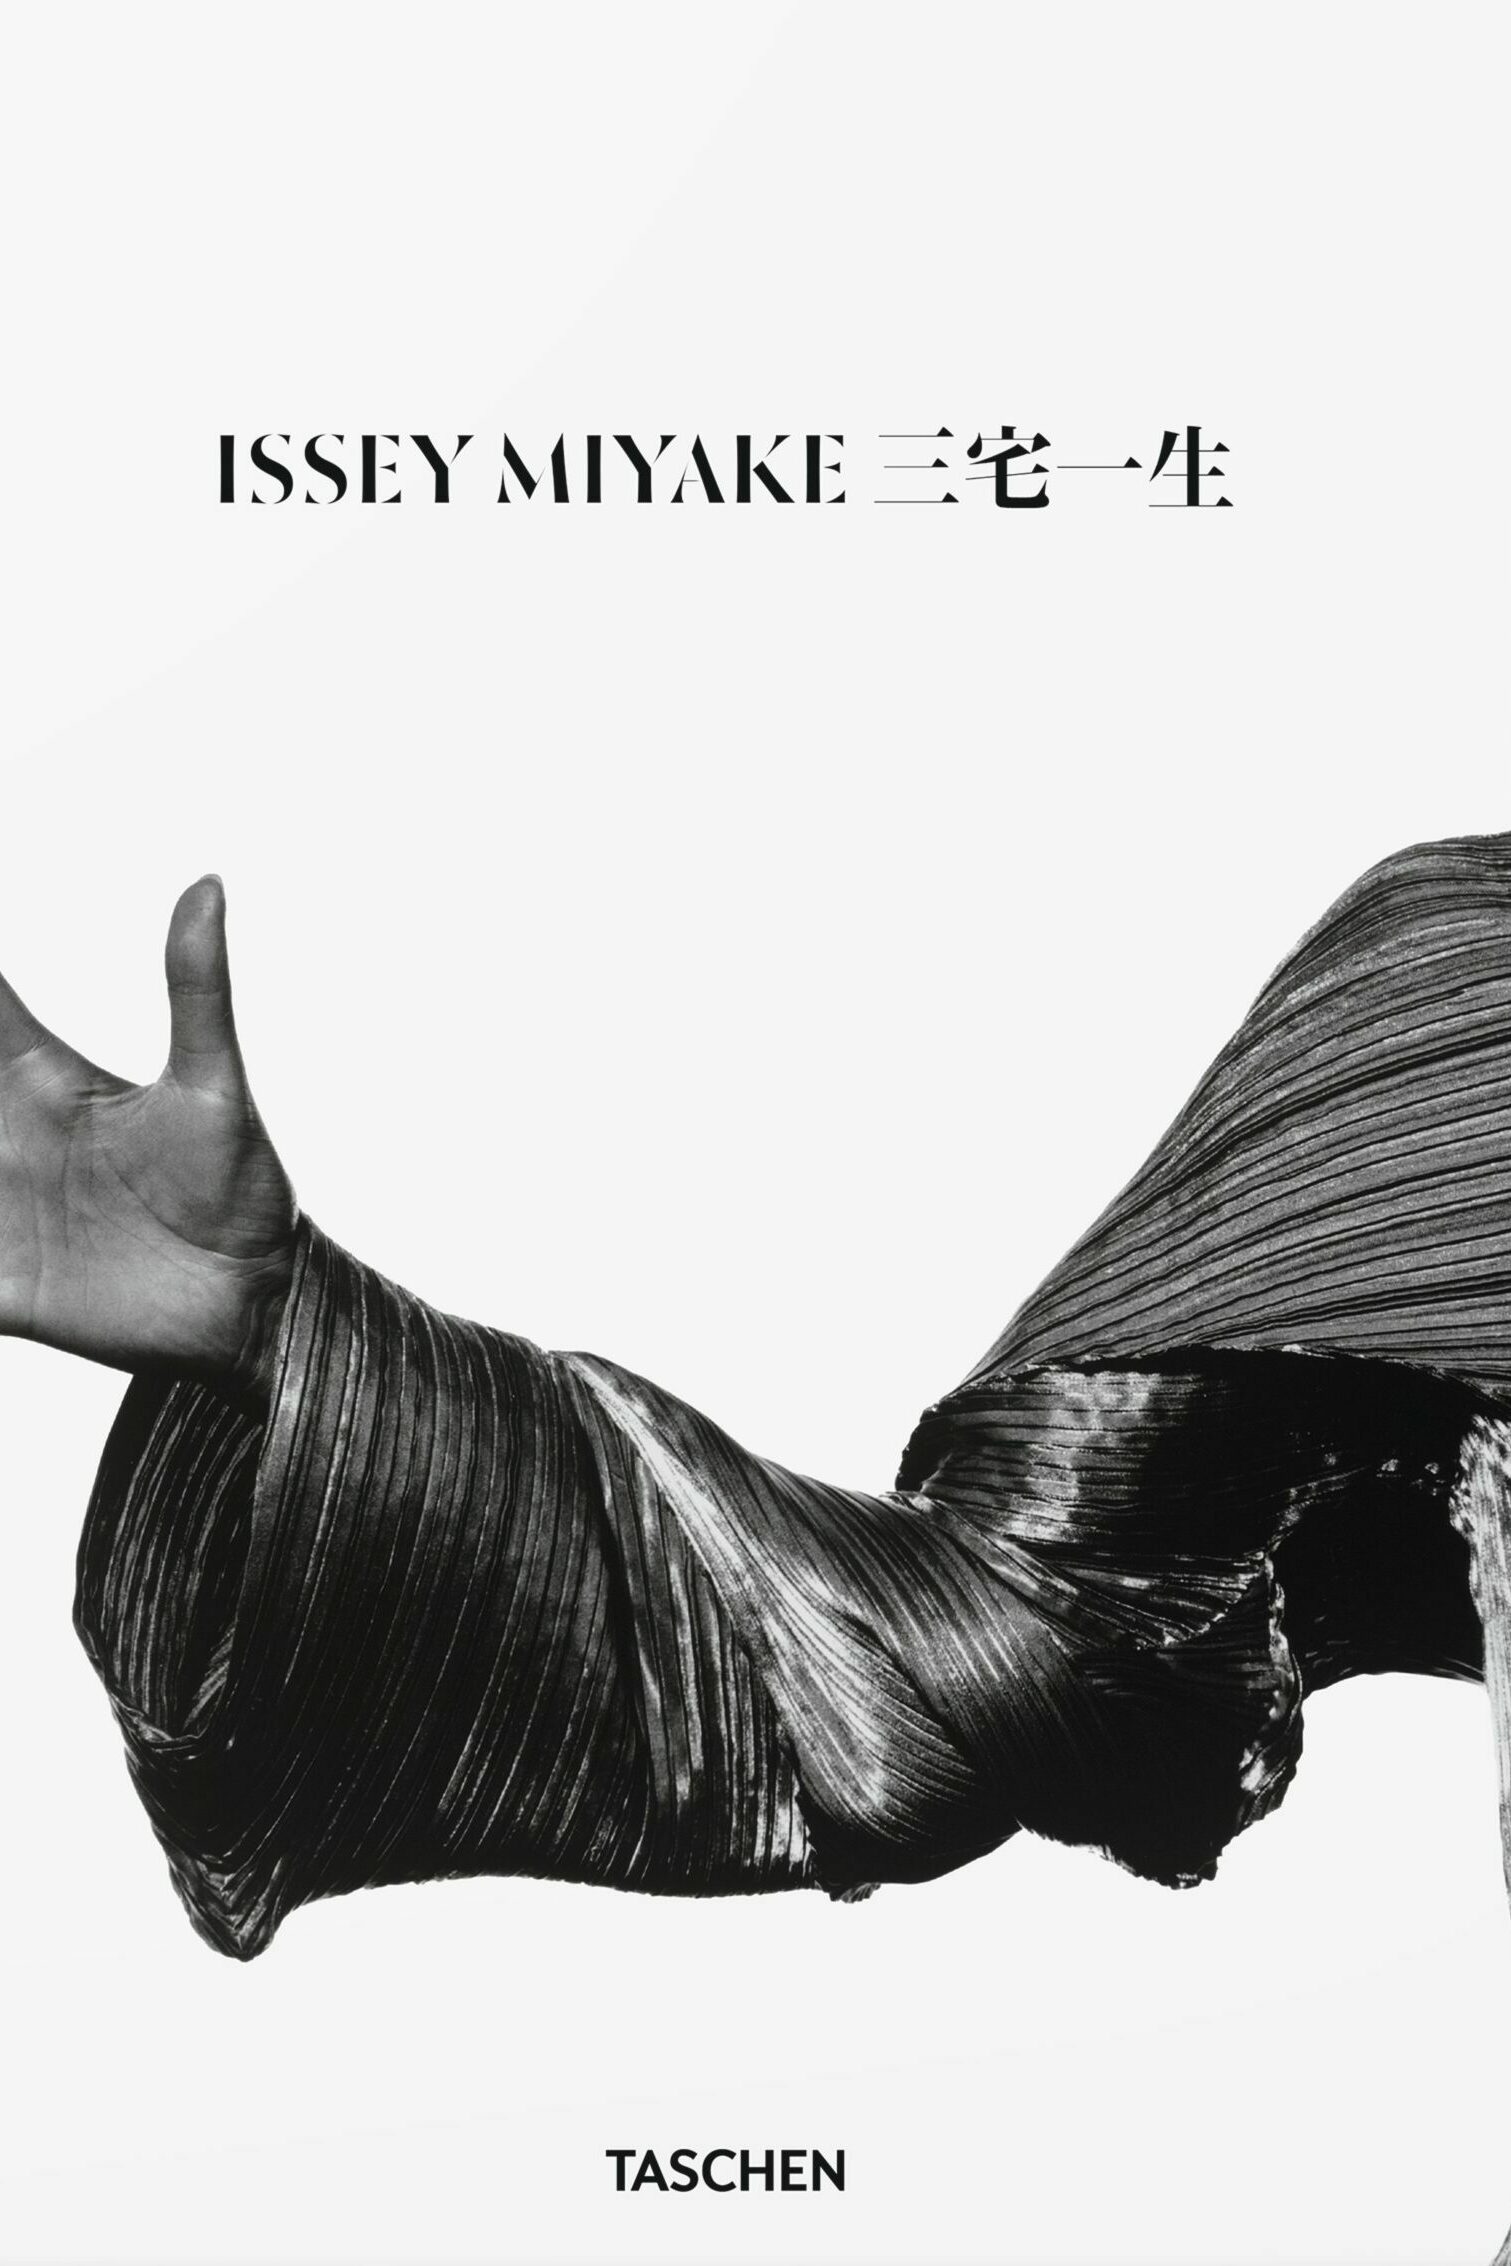 issey miyake, Midori Kitamura, kunstbuch bildband fotobuch